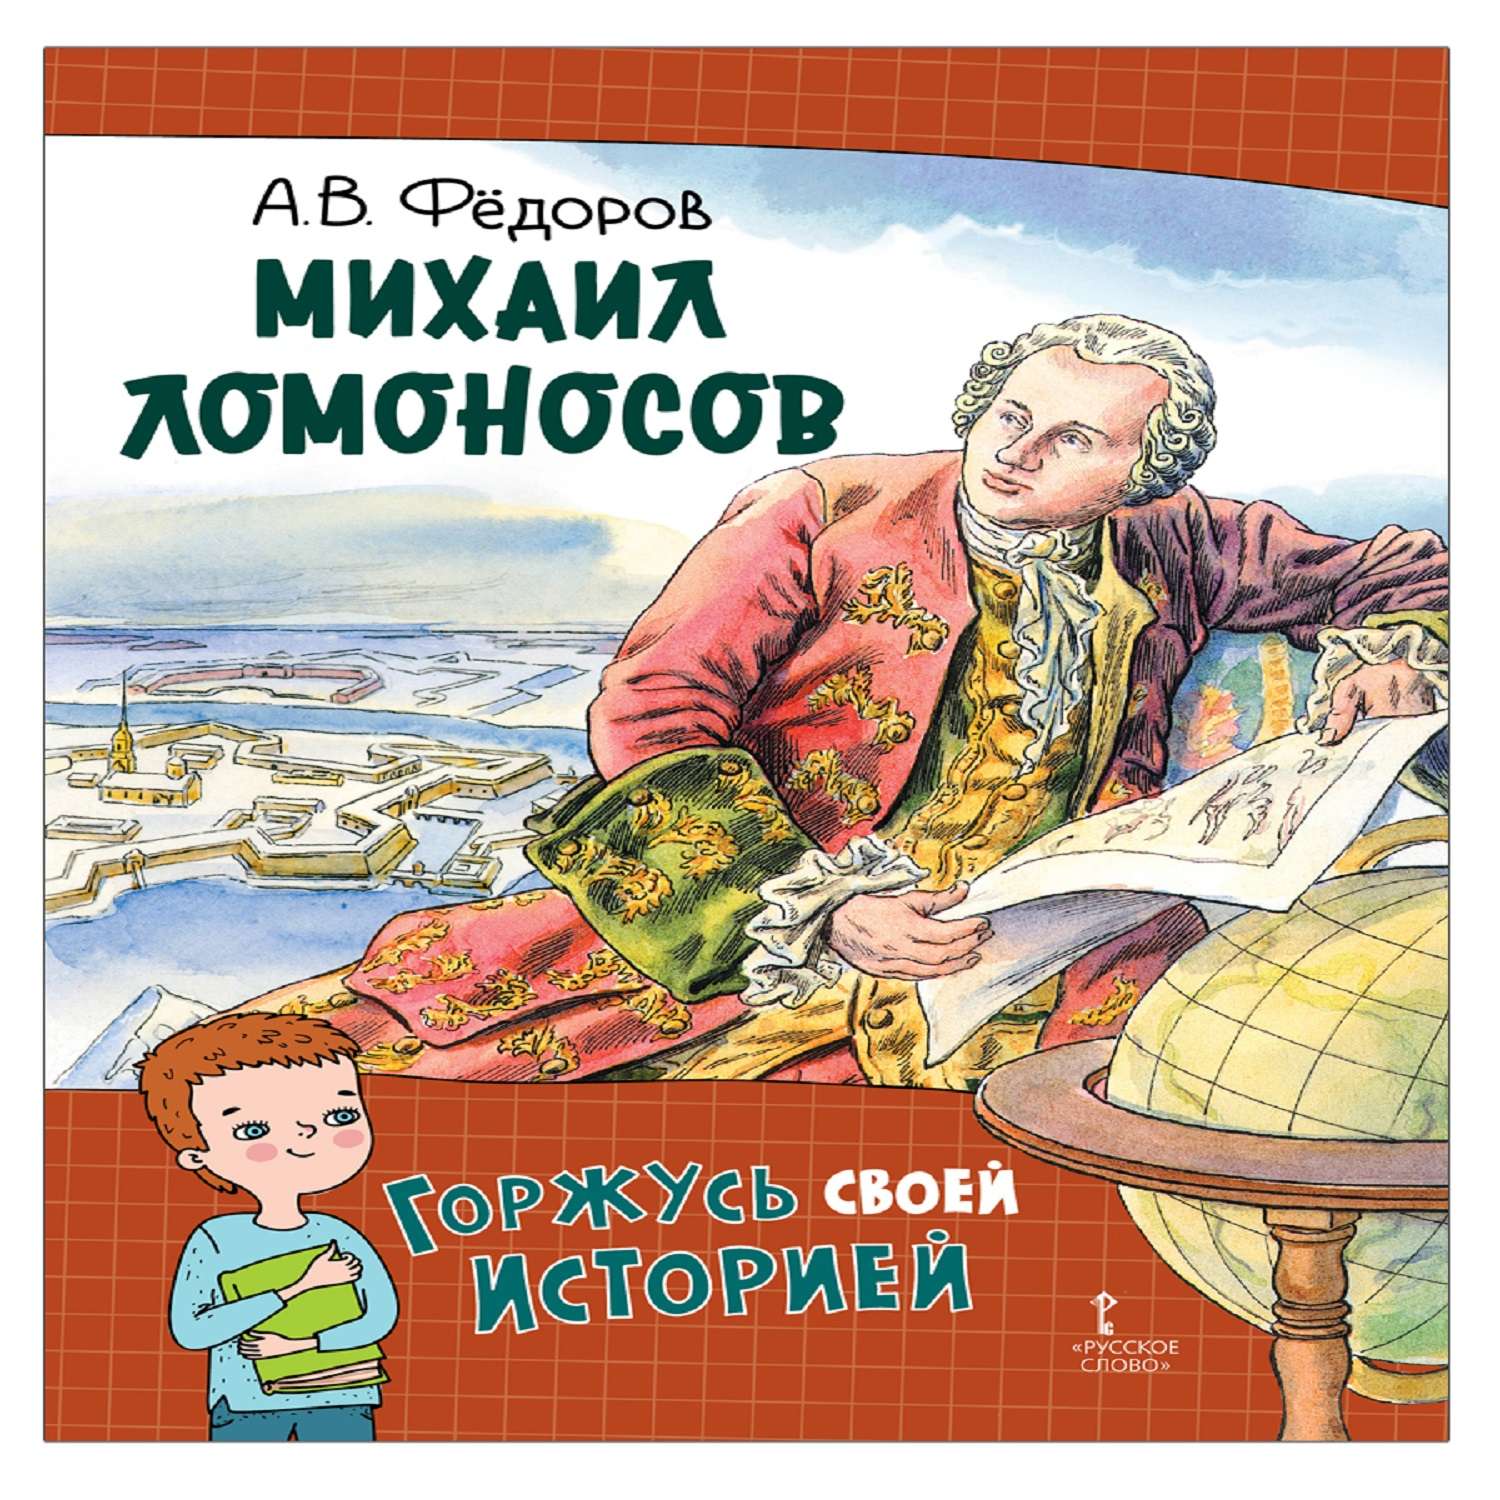 Книга Русское Слово Михаил Ломоносов - фото 1